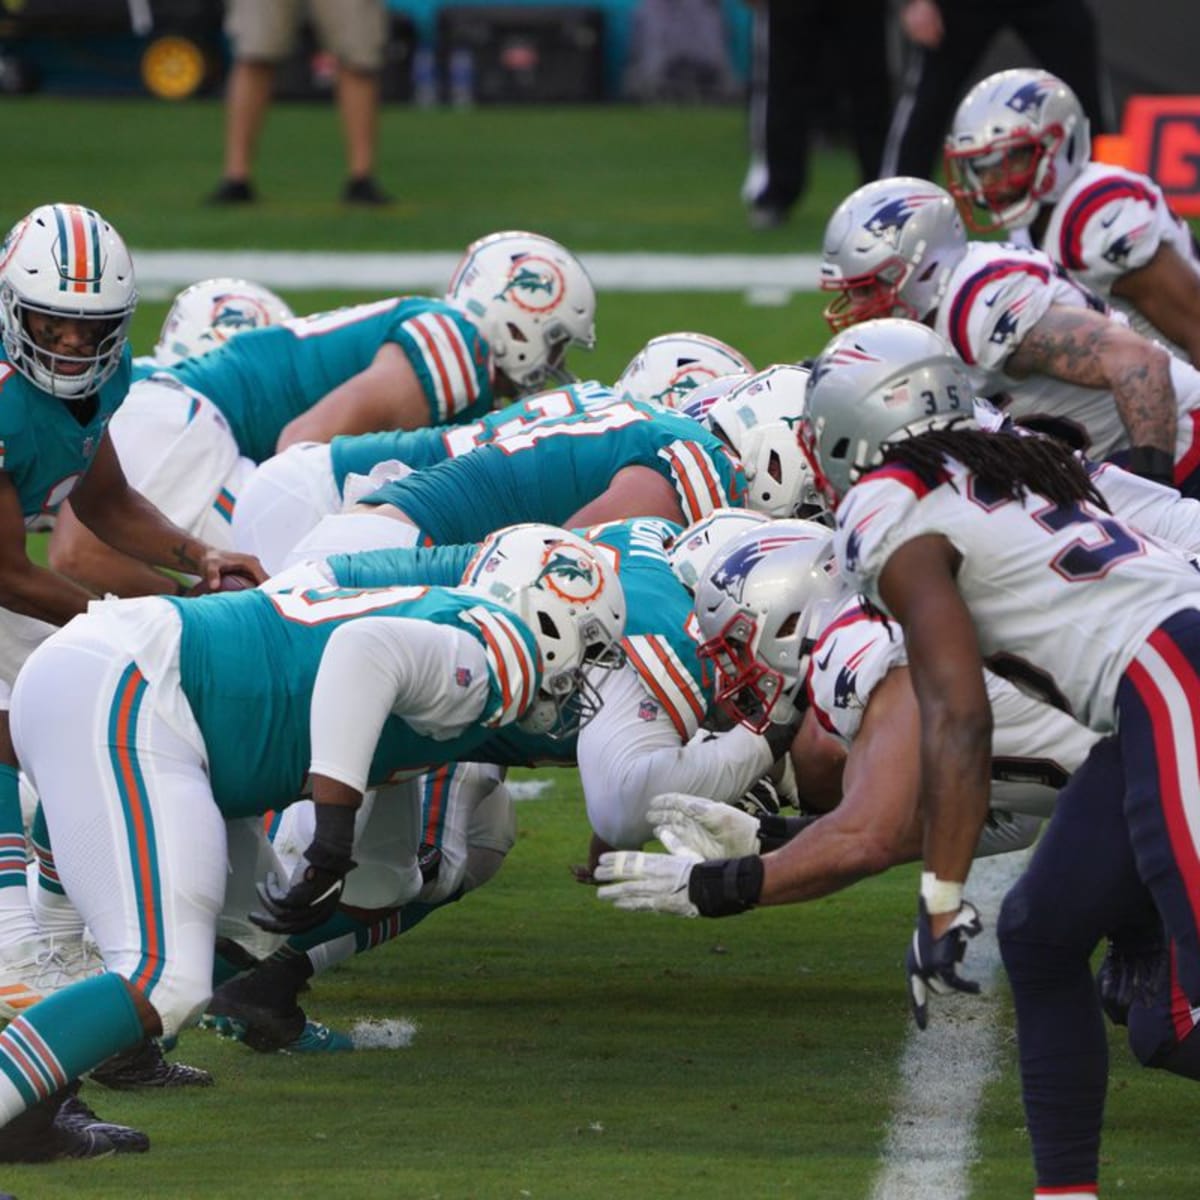 New England Patriots vs. Miami Dolphins: Mac Jones, More 'Mondre, Pats  Defense vs. Tyreek Hill